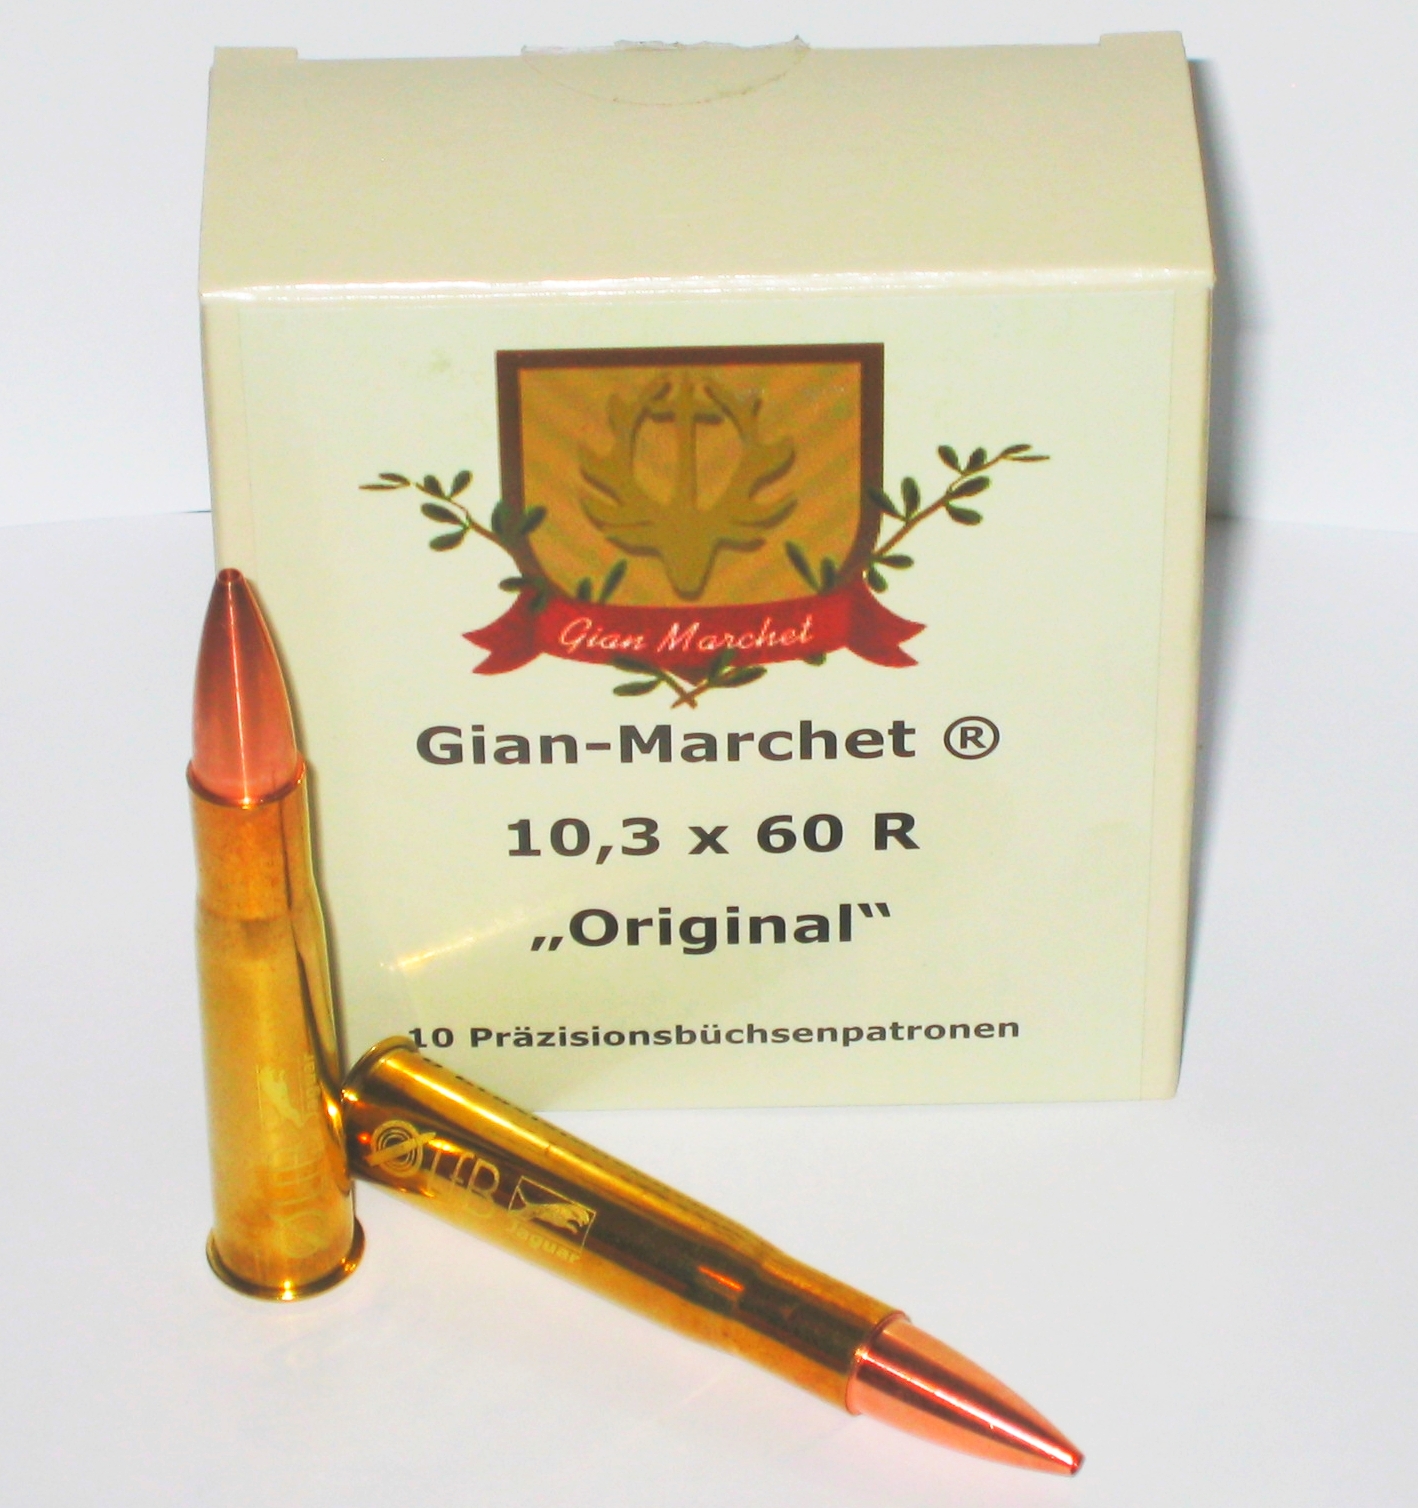 Gian-Marchet® Fabrikmunition sofort erhältlich. Bitte hier klicken, um weiter zu kommen...